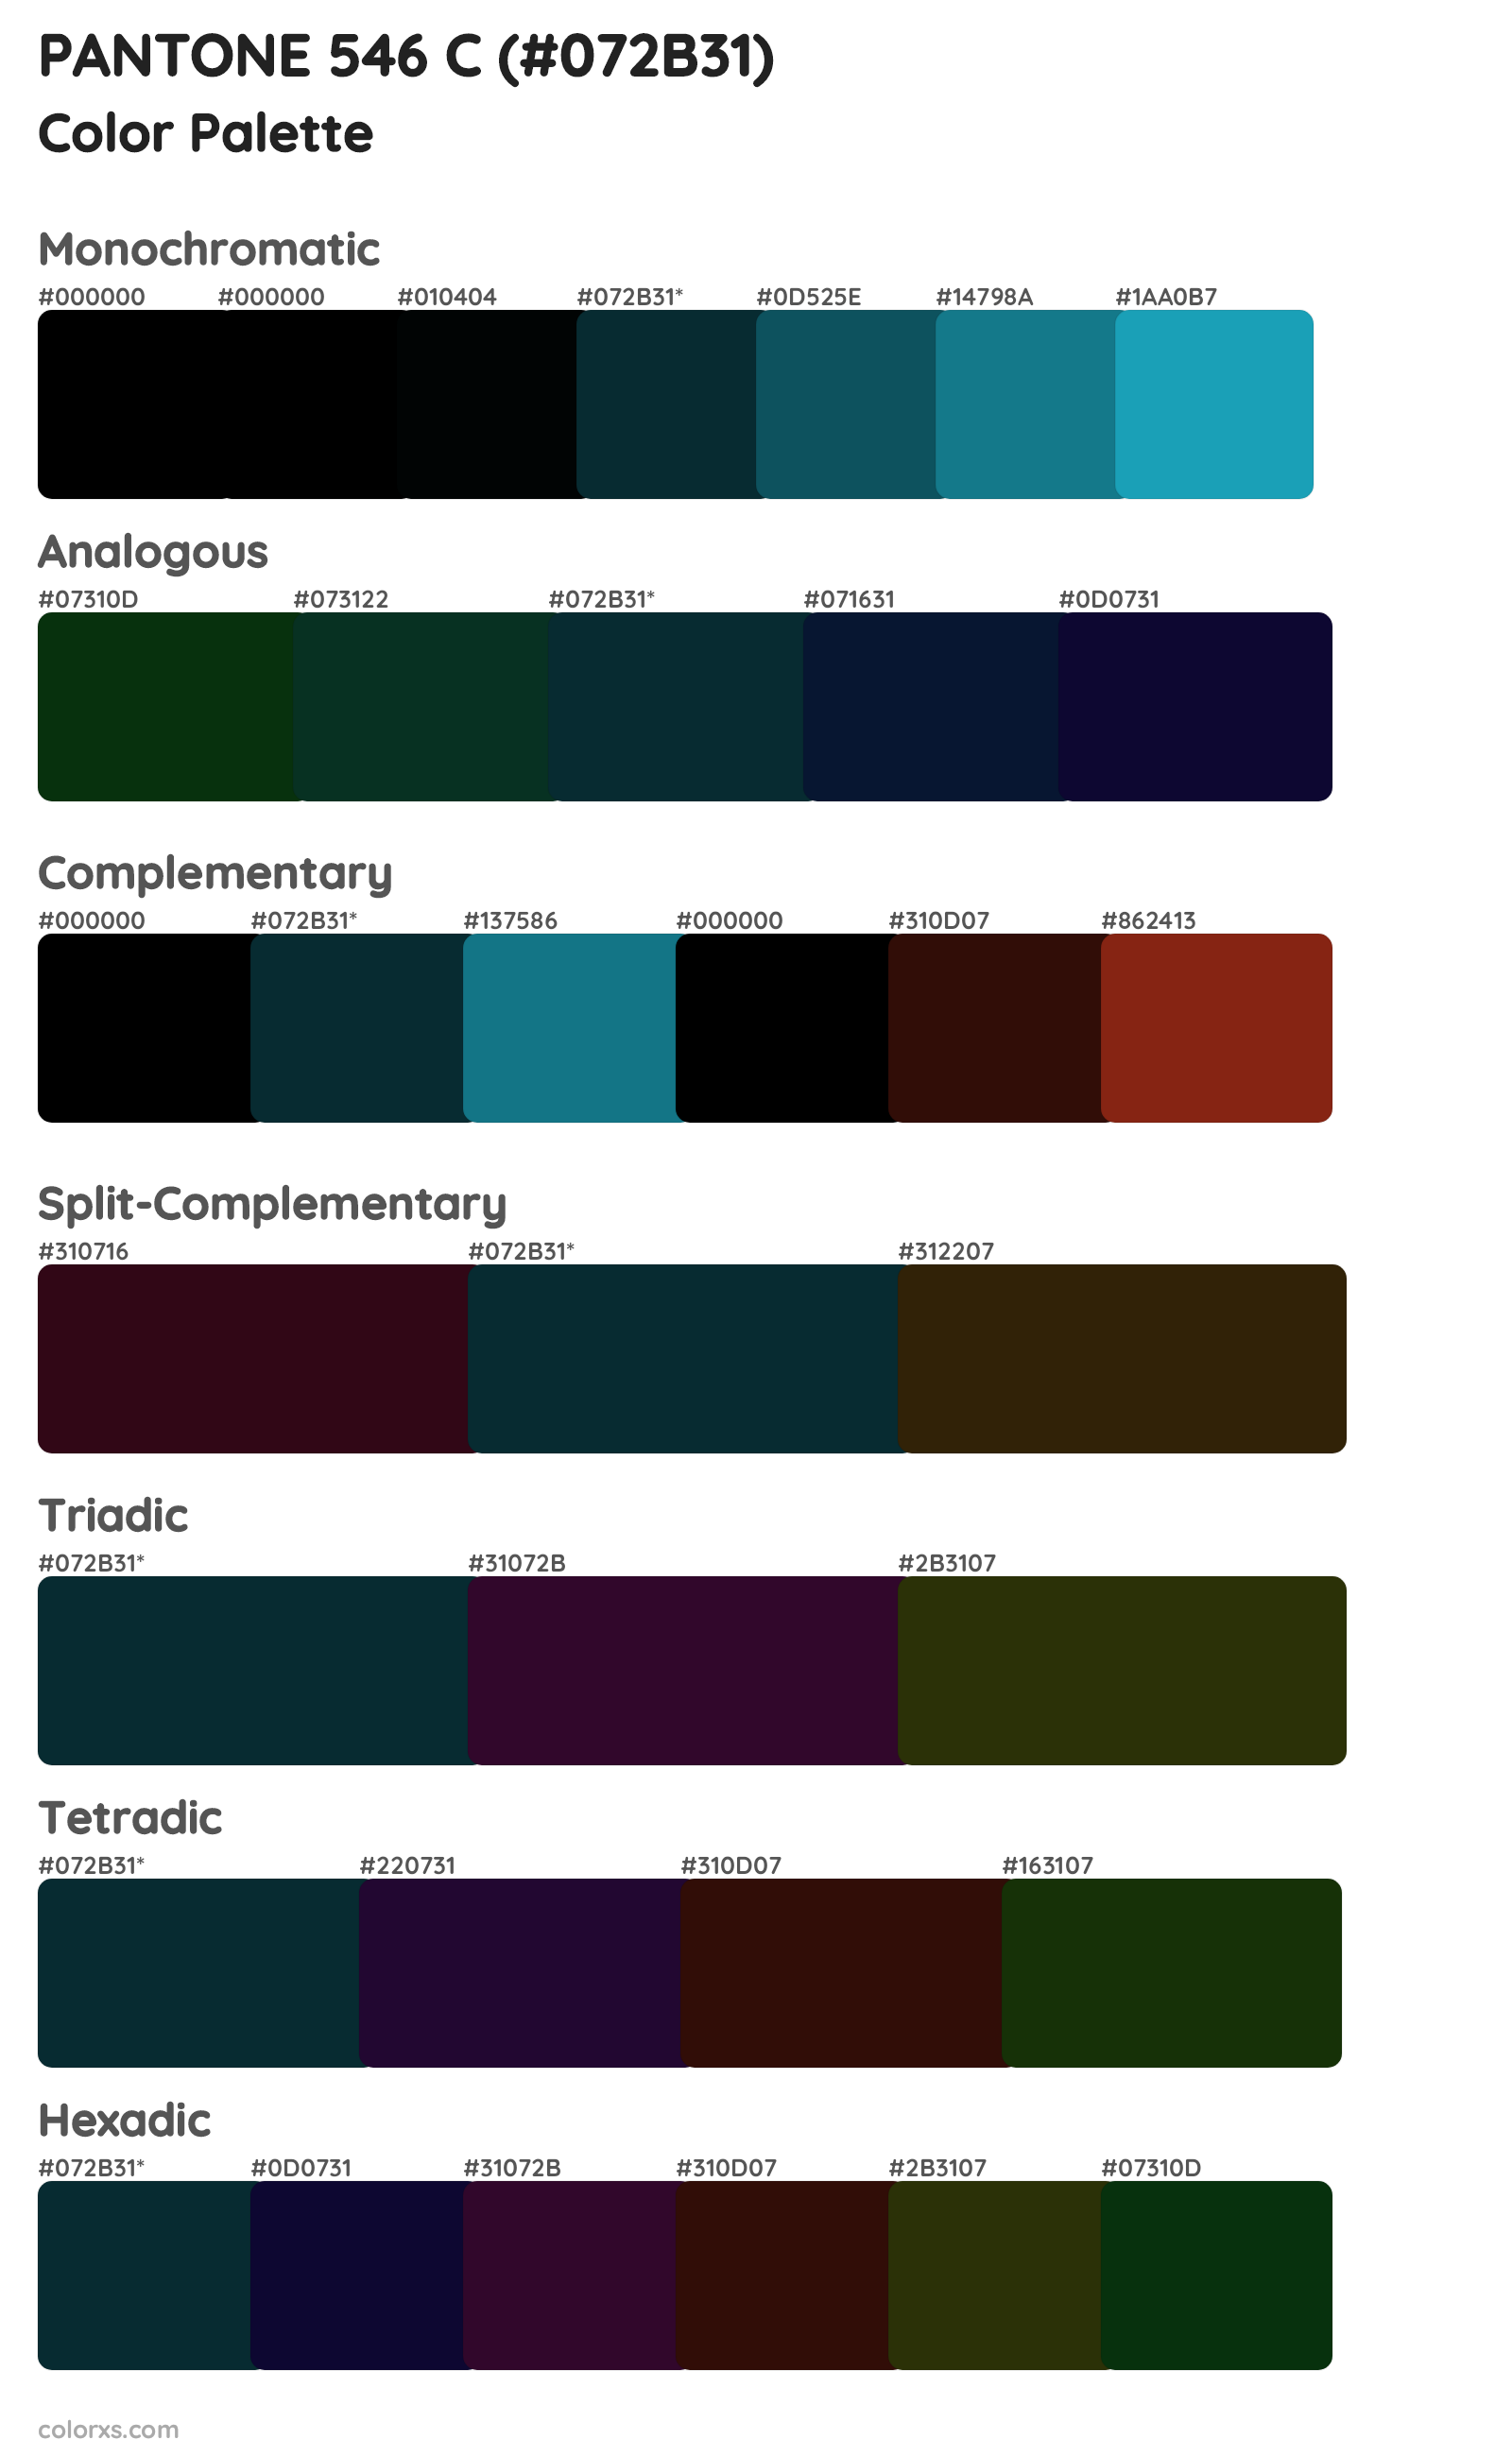 PANTONE 546 C Color Scheme Palettes